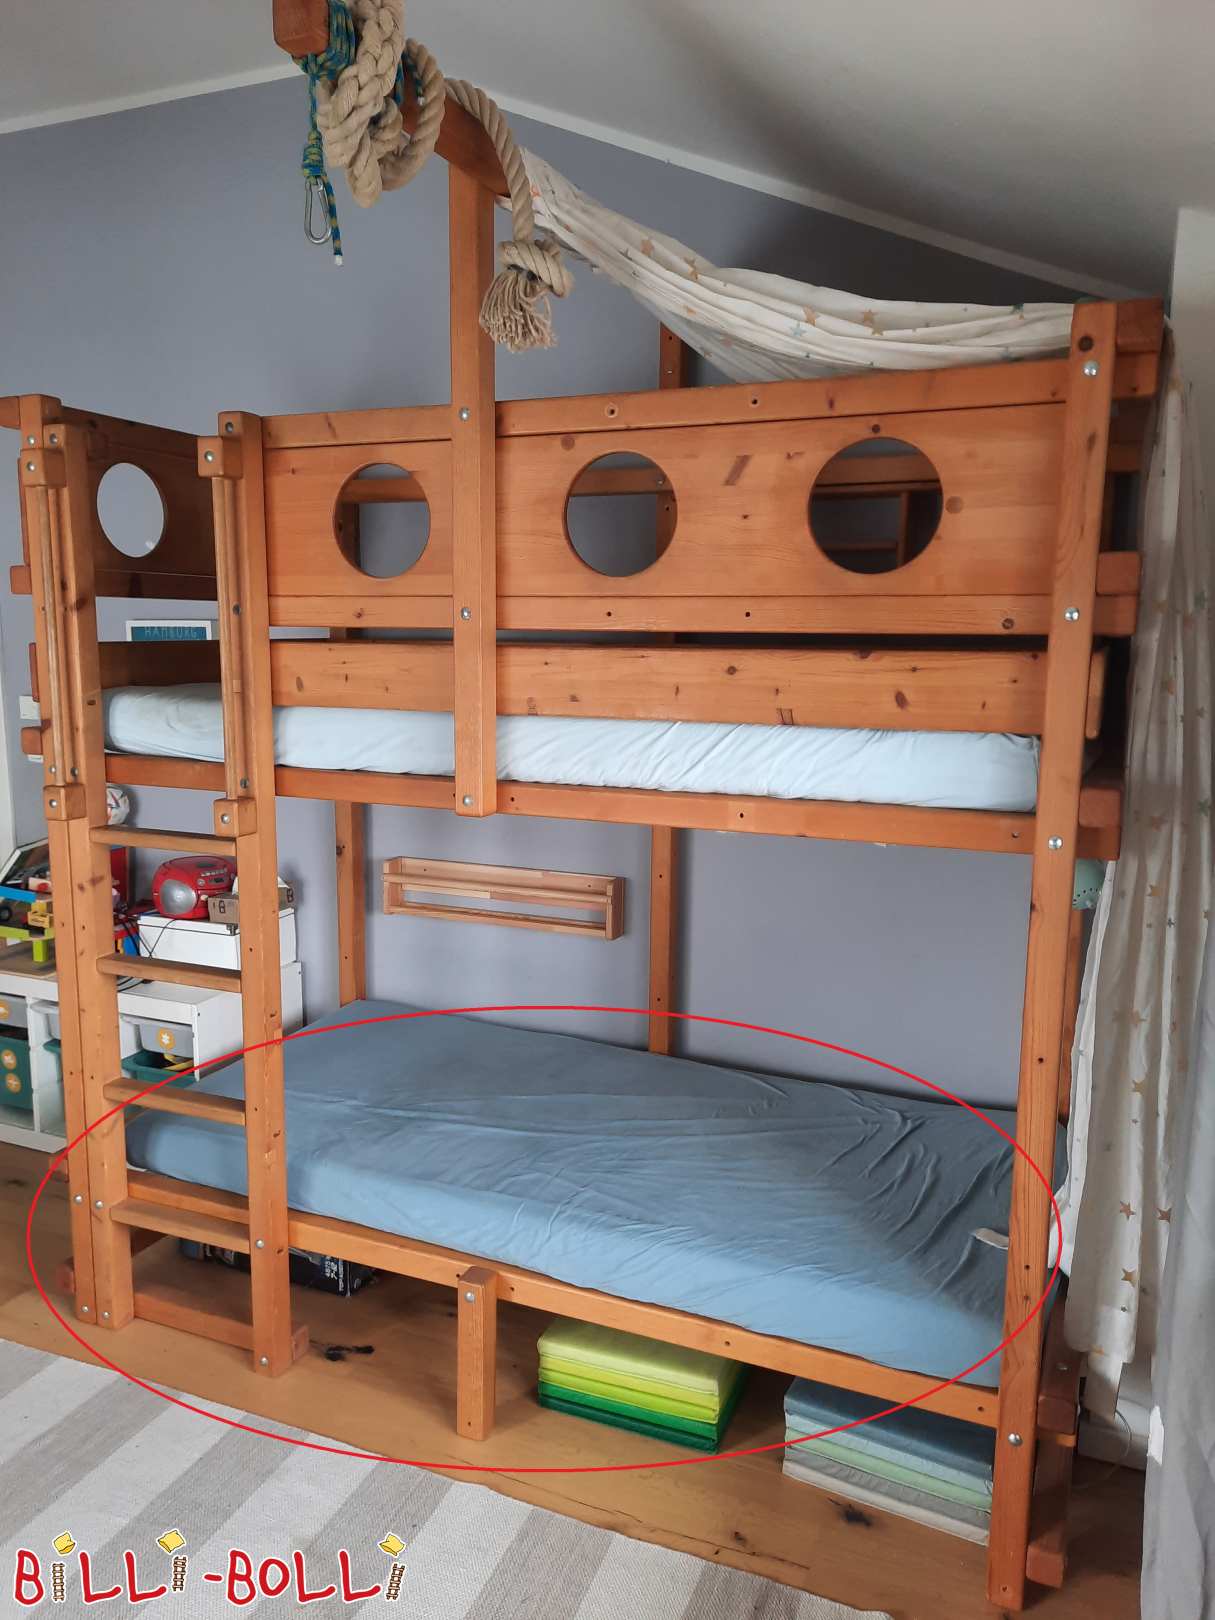 Nivell de dormir addicional per al llit tipus loft (Categoria: Accessoris/Peces d'extensió utilitzades)